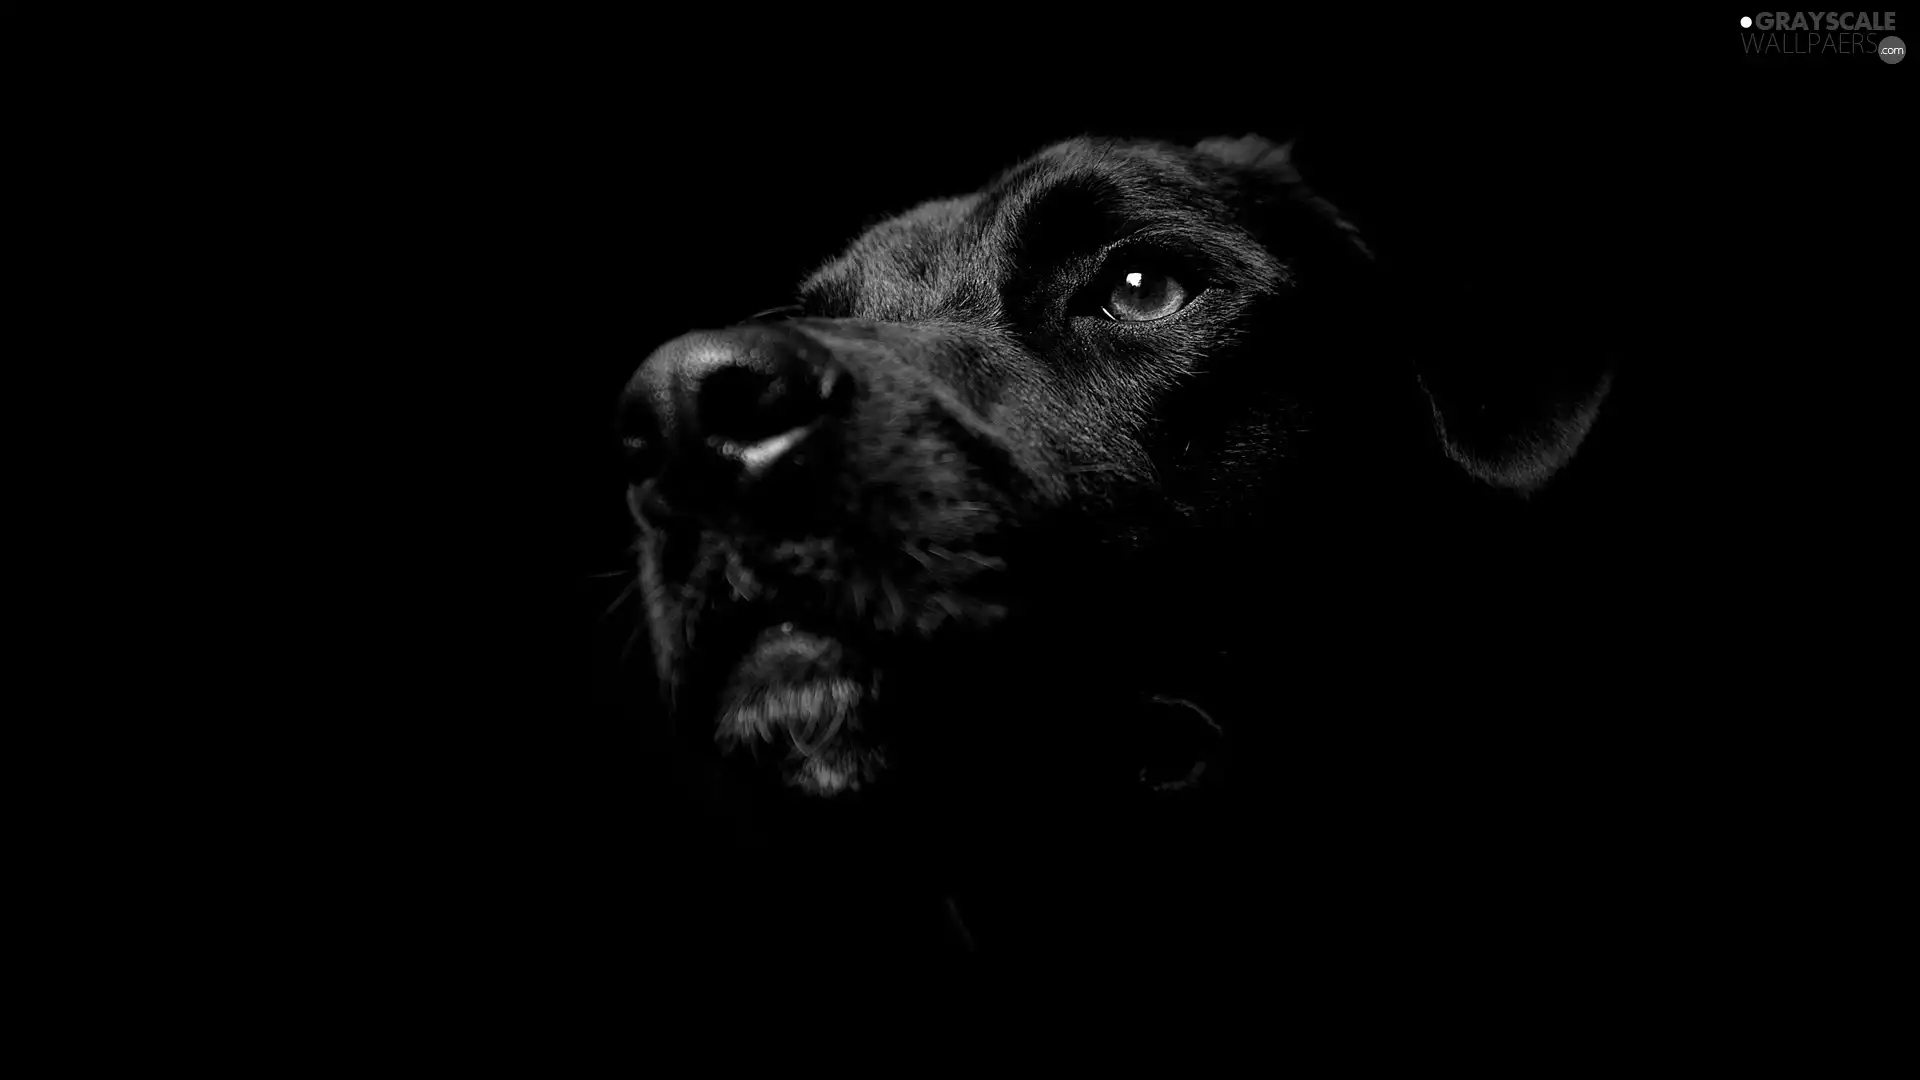 Labrador Retriever, Black, dog